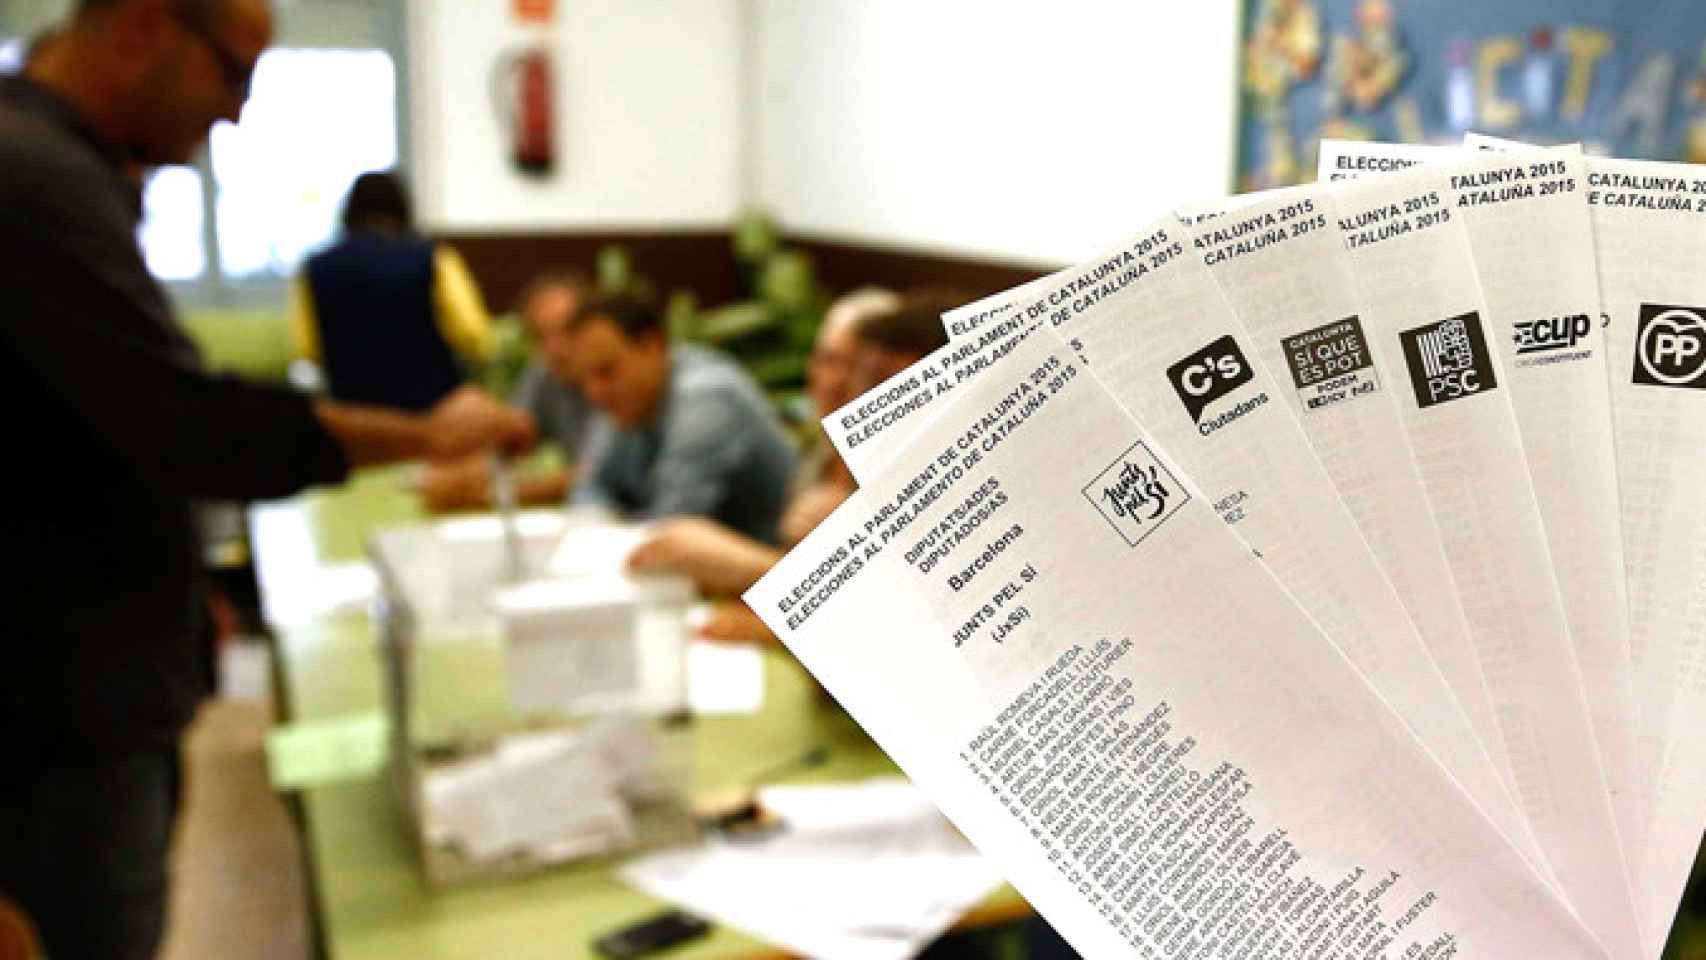 Papeletas de algunos partidos que concurrieron a las elecciones municipales de Cataluña en 2015. Propaganda electoral / EFE